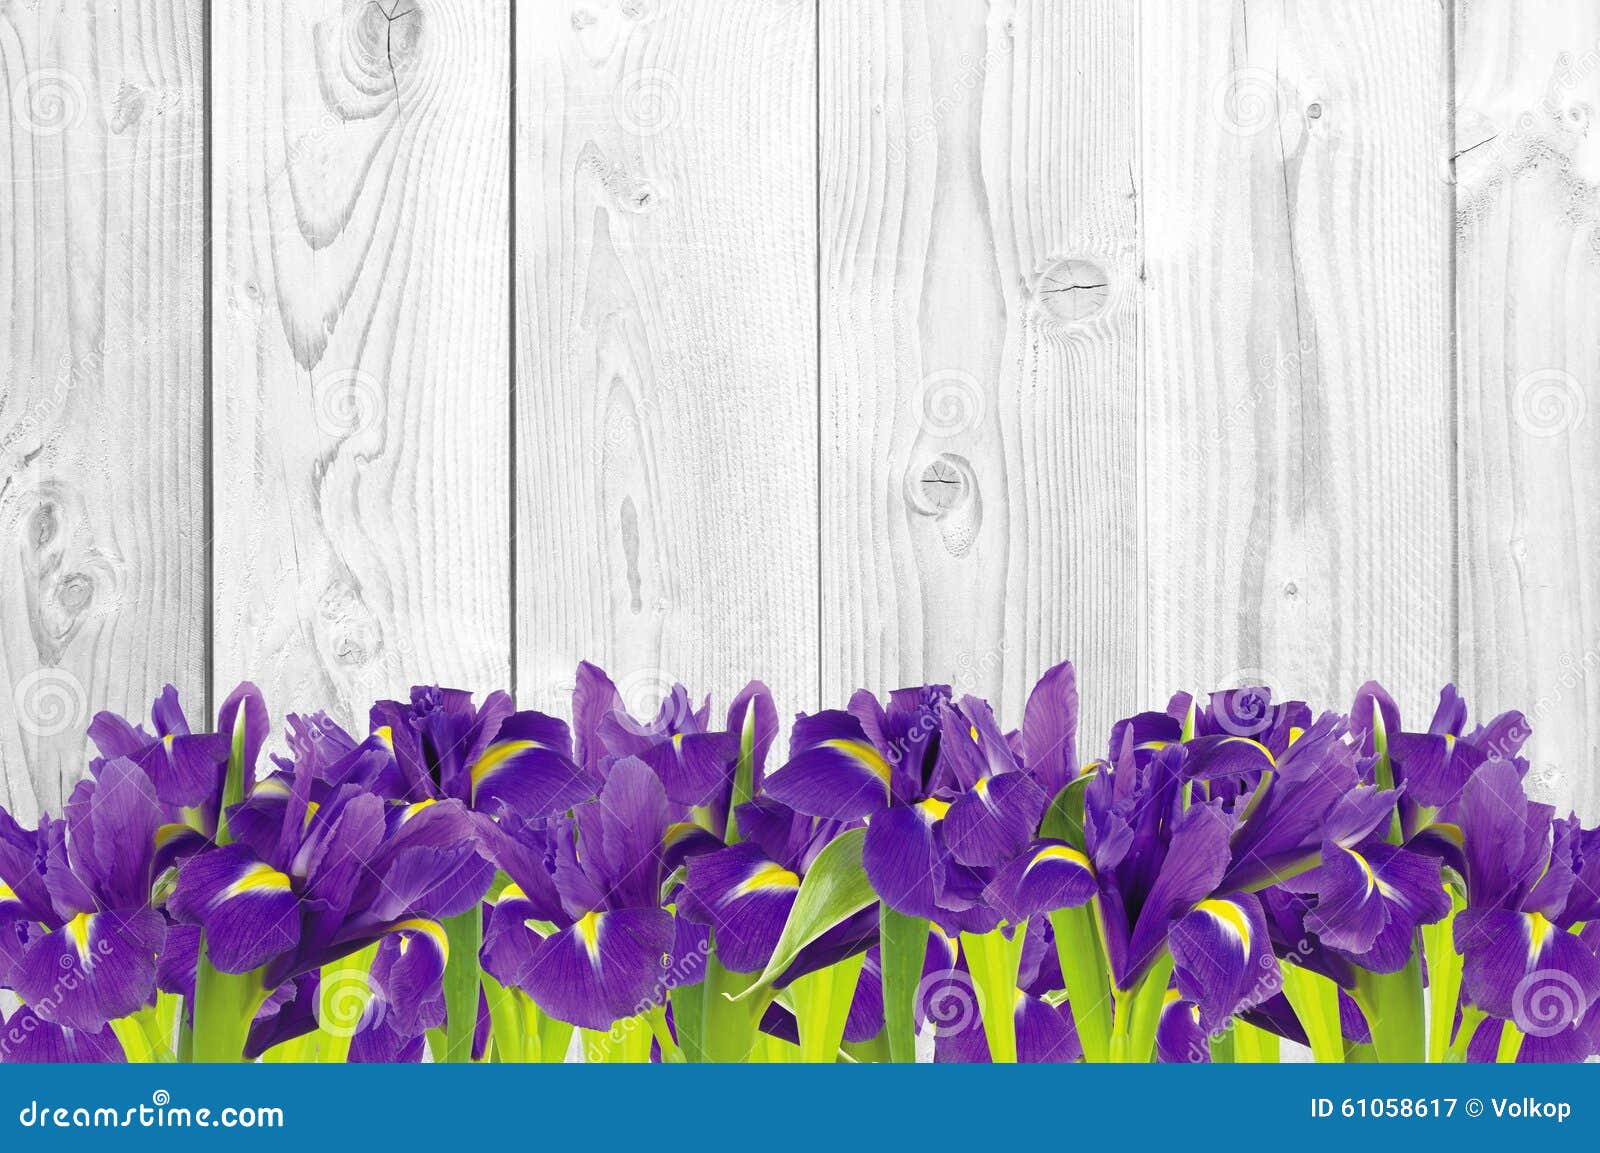 blueflag or iris flower on white wooden